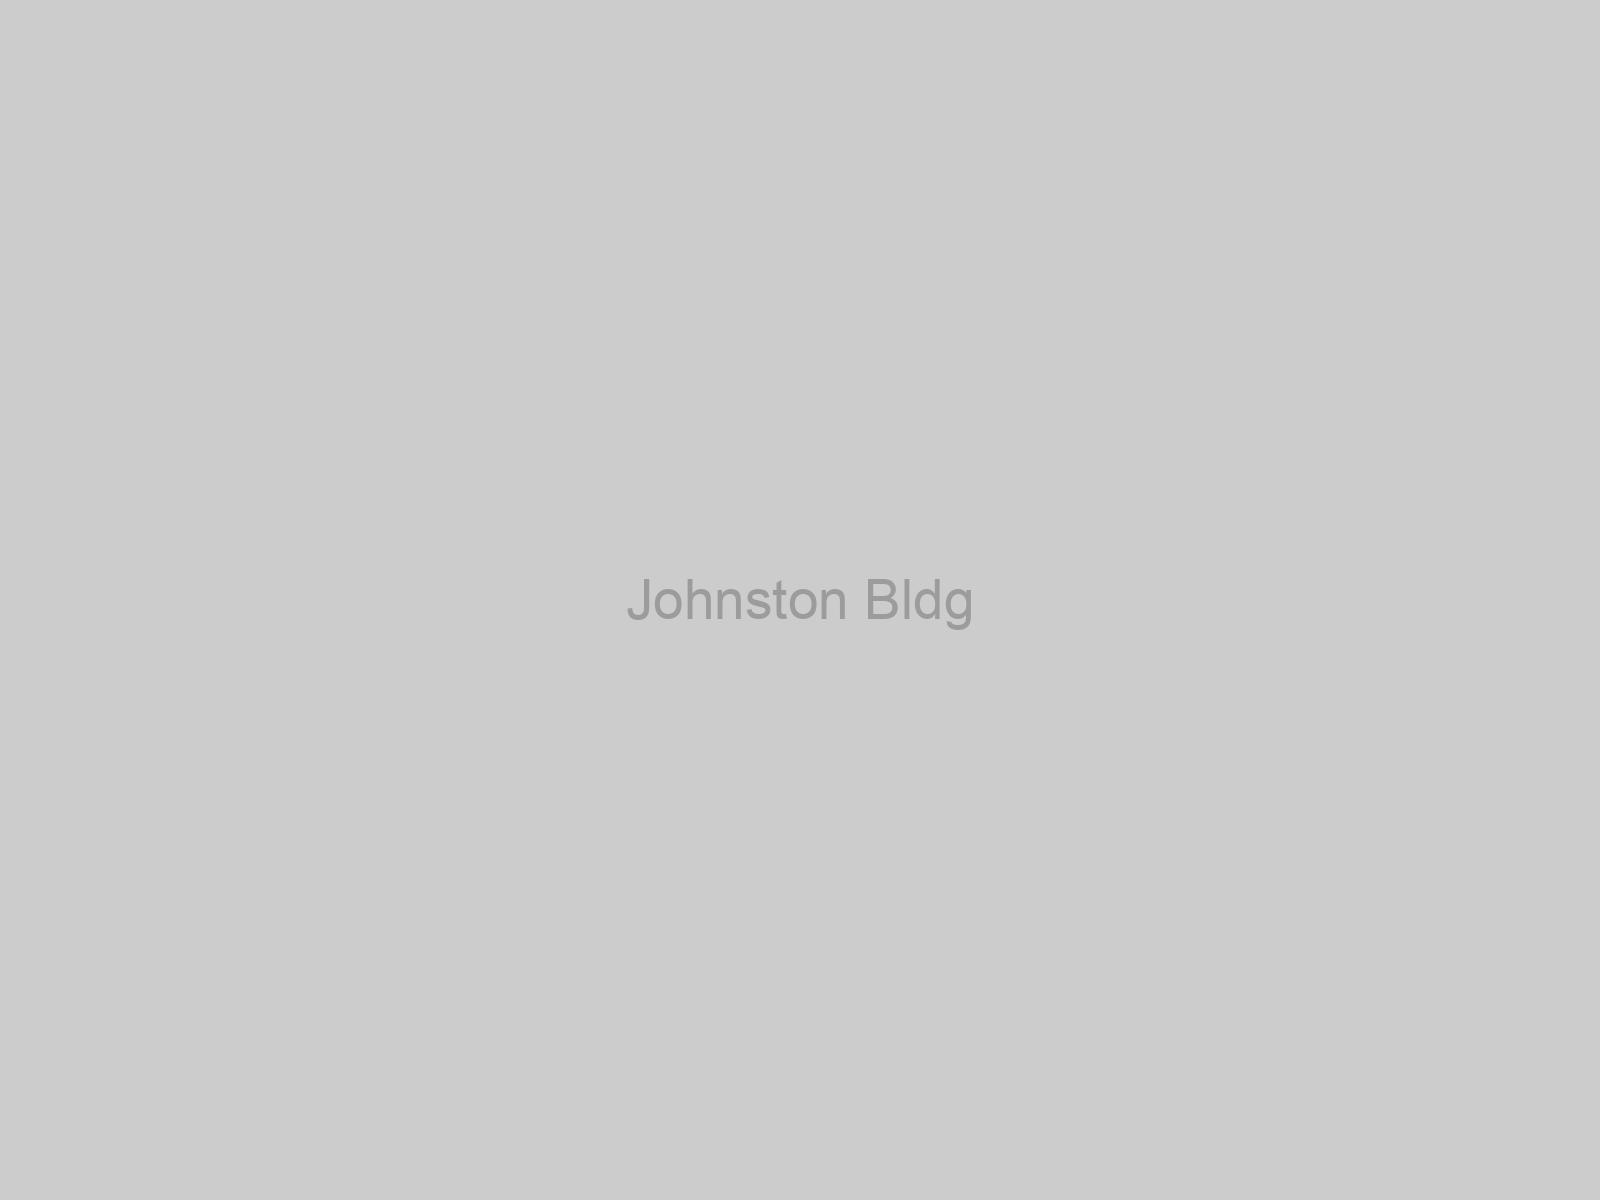 Johnston Bldg